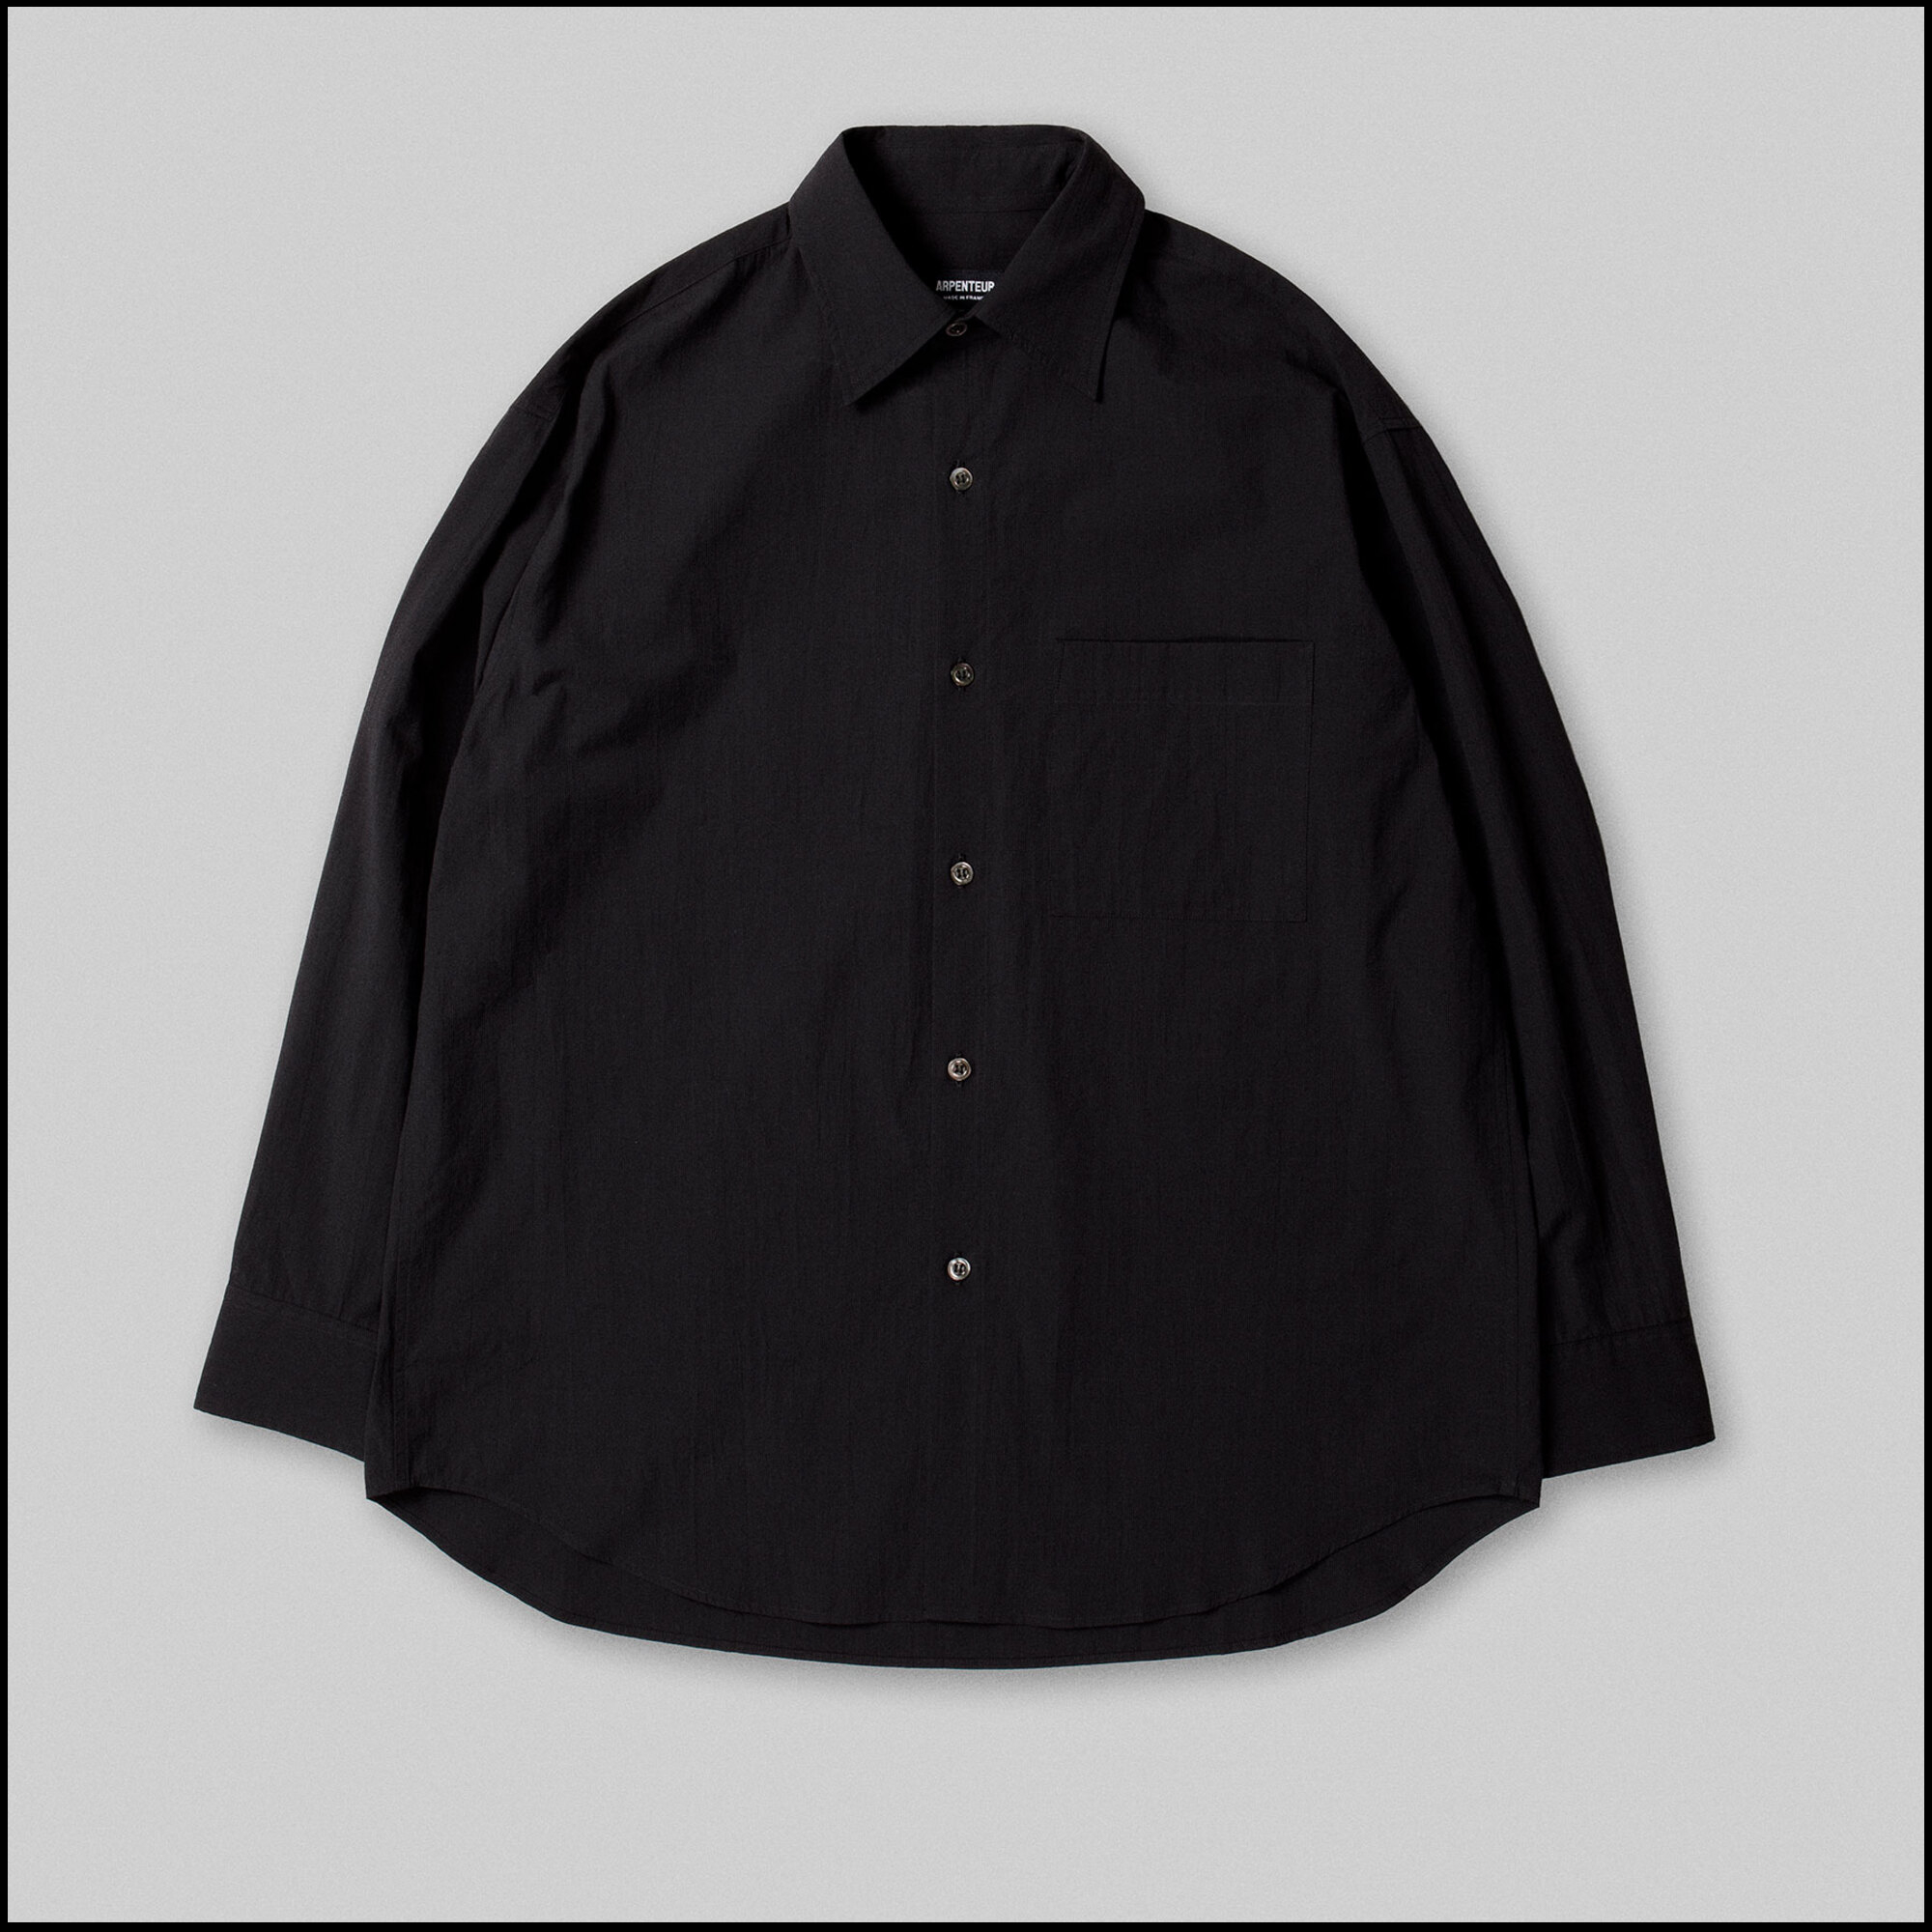 DORIS shirt by Arpenteur in Black color